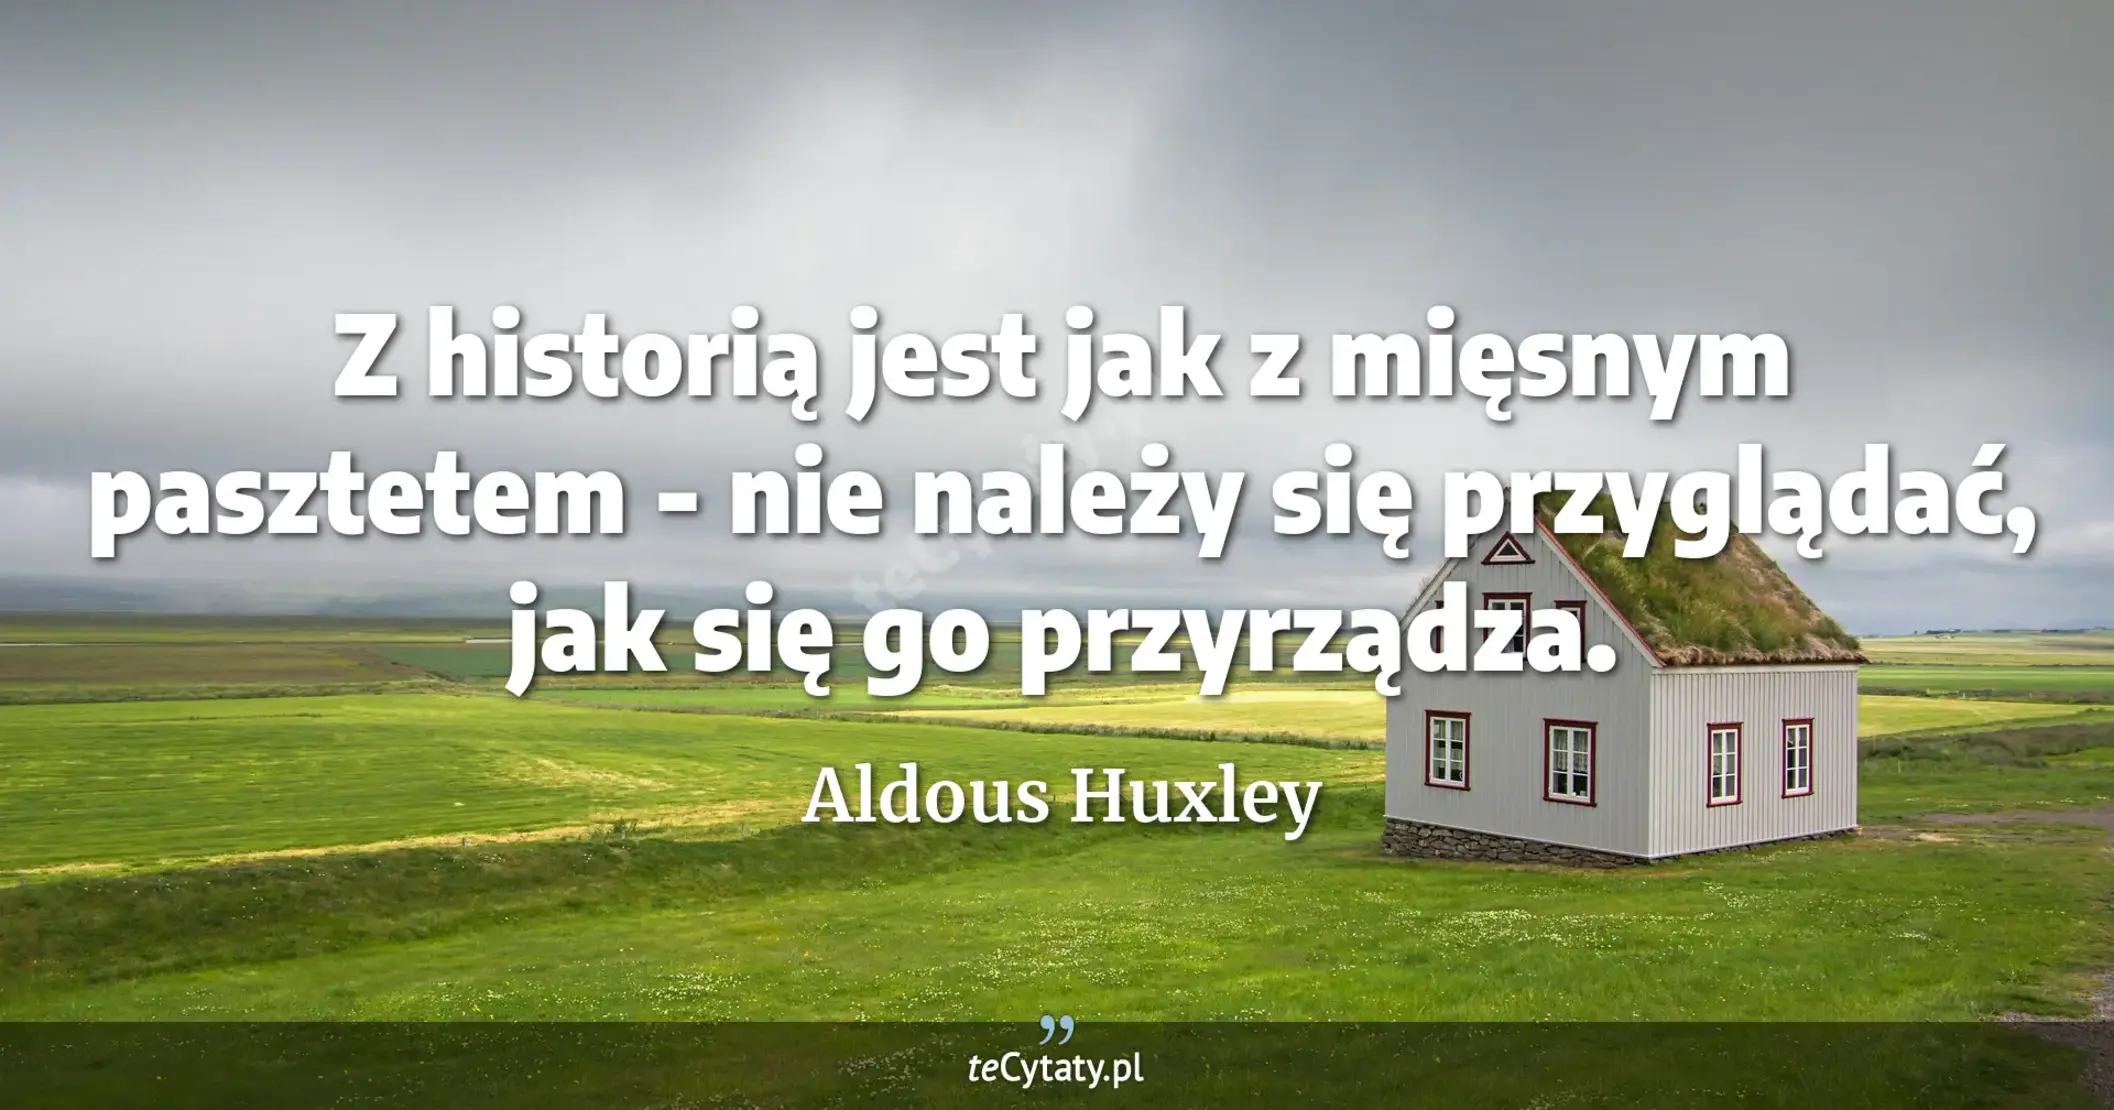 Z historią jest jak z mięsnym pasztetem - nie należy się przyglądać, jak się go przyrządza. - Aldous Huxley